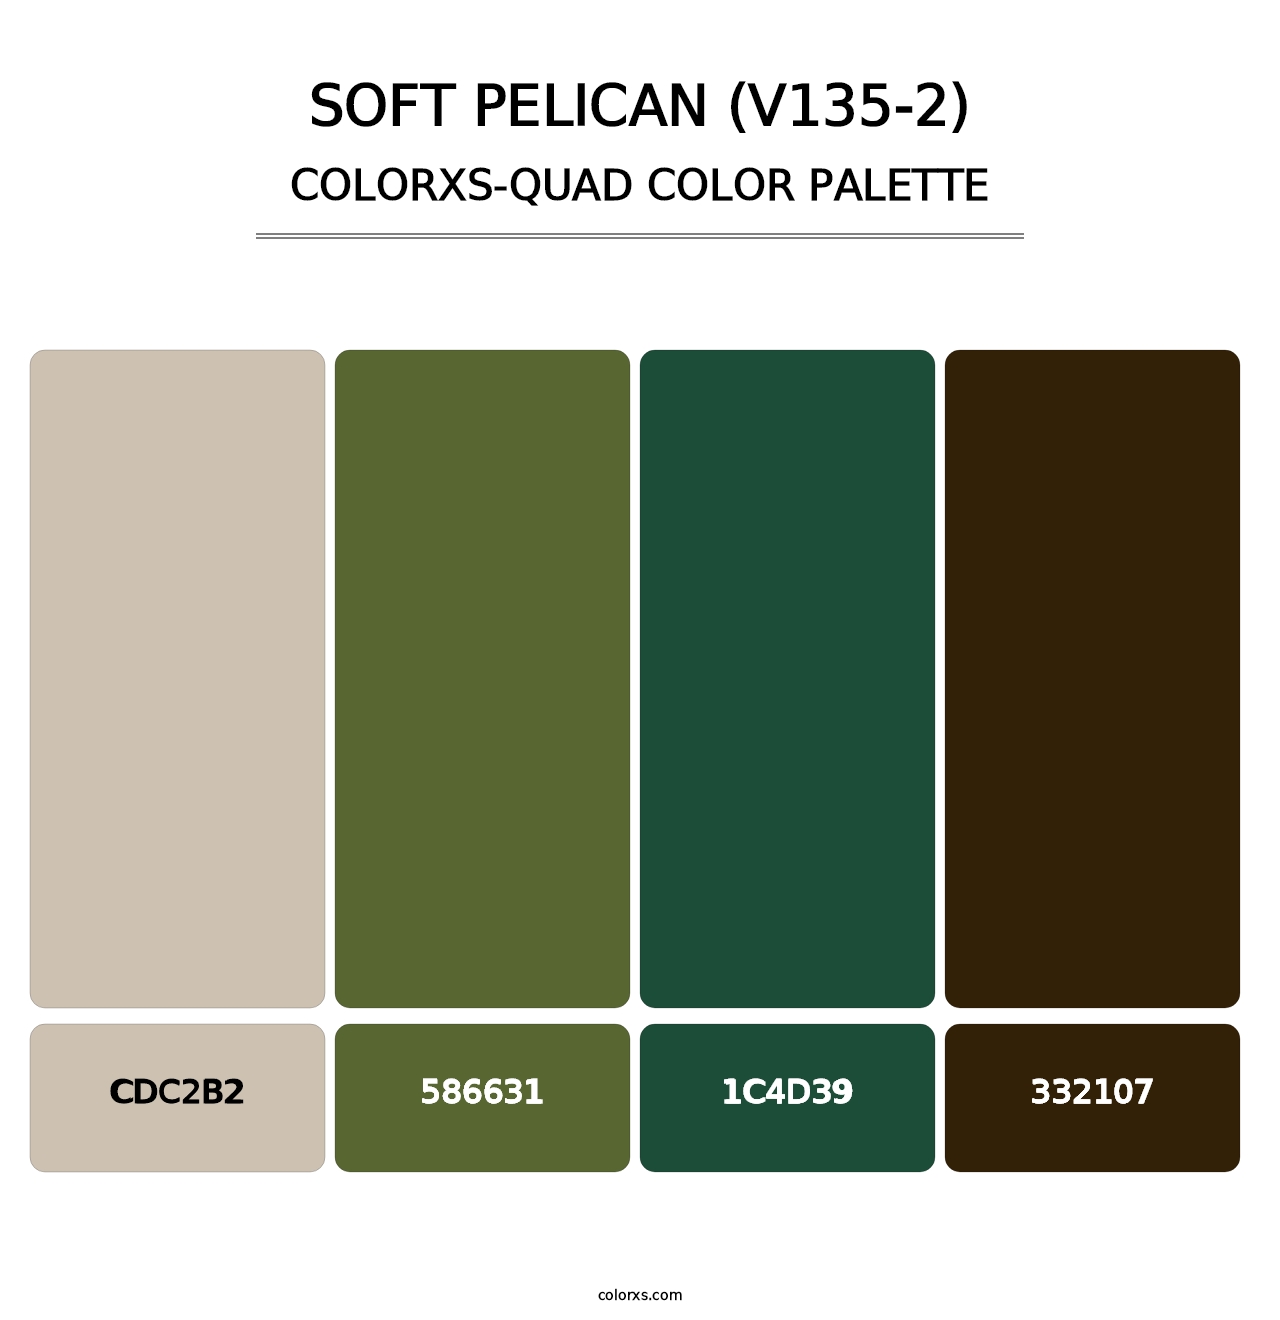 Soft Pelican (V135-2) - Colorxs Quad Palette